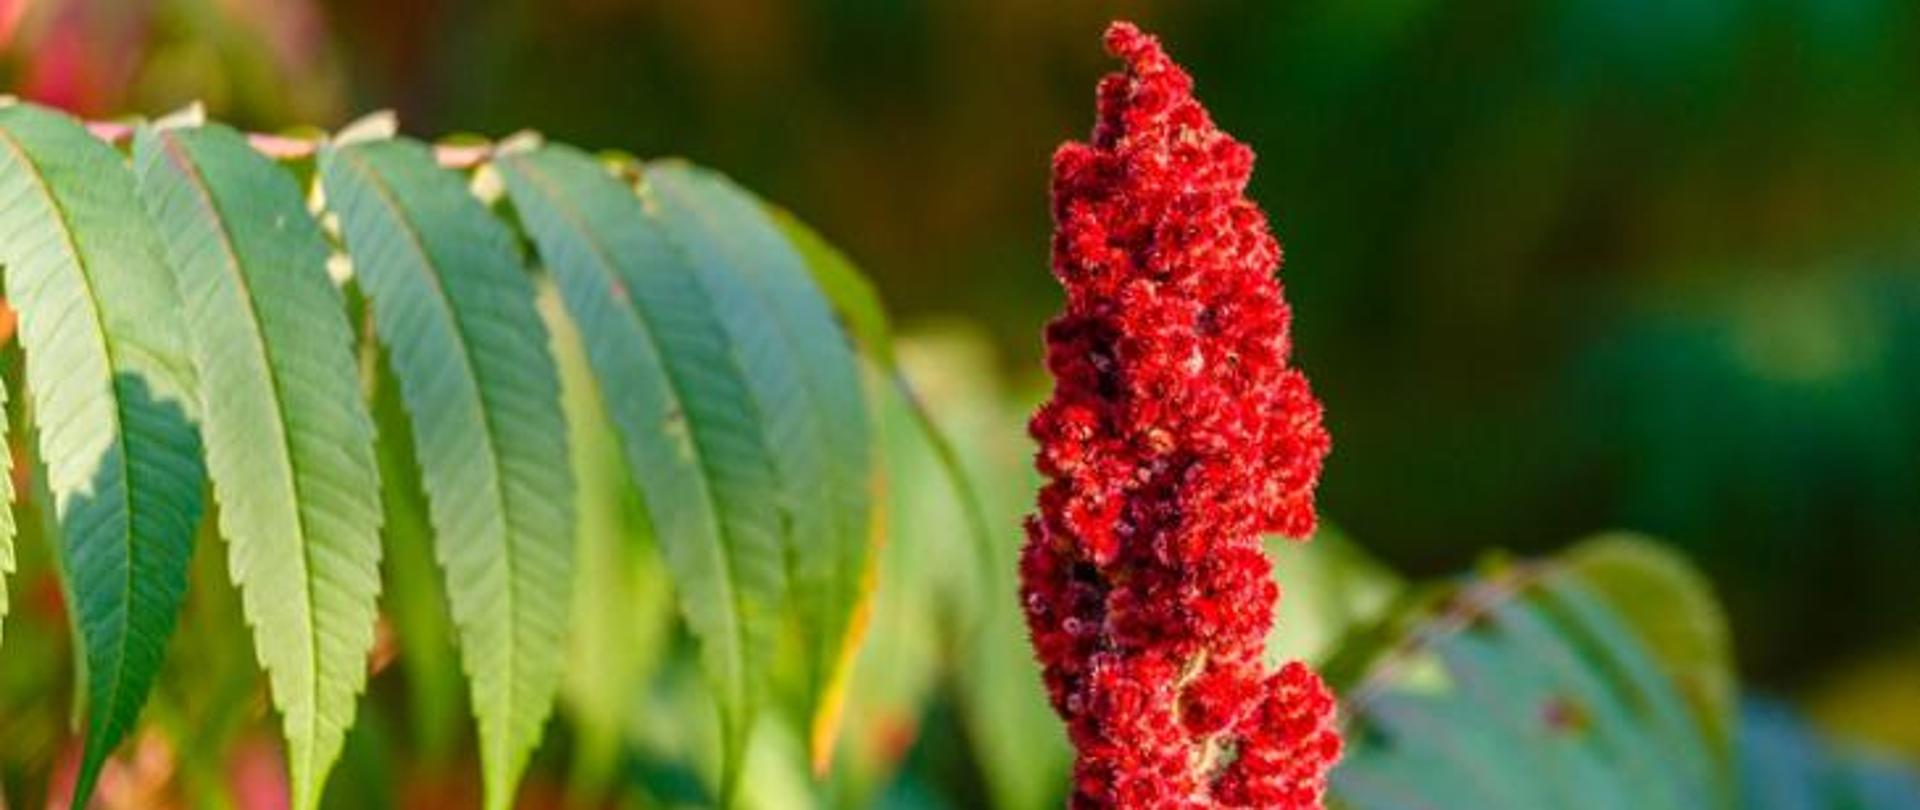 Sumak octowiec (Rhus typhina) – czerwone drobne kwiaty zebrane na końcach pędów stożkowate, owłosione wiechy
